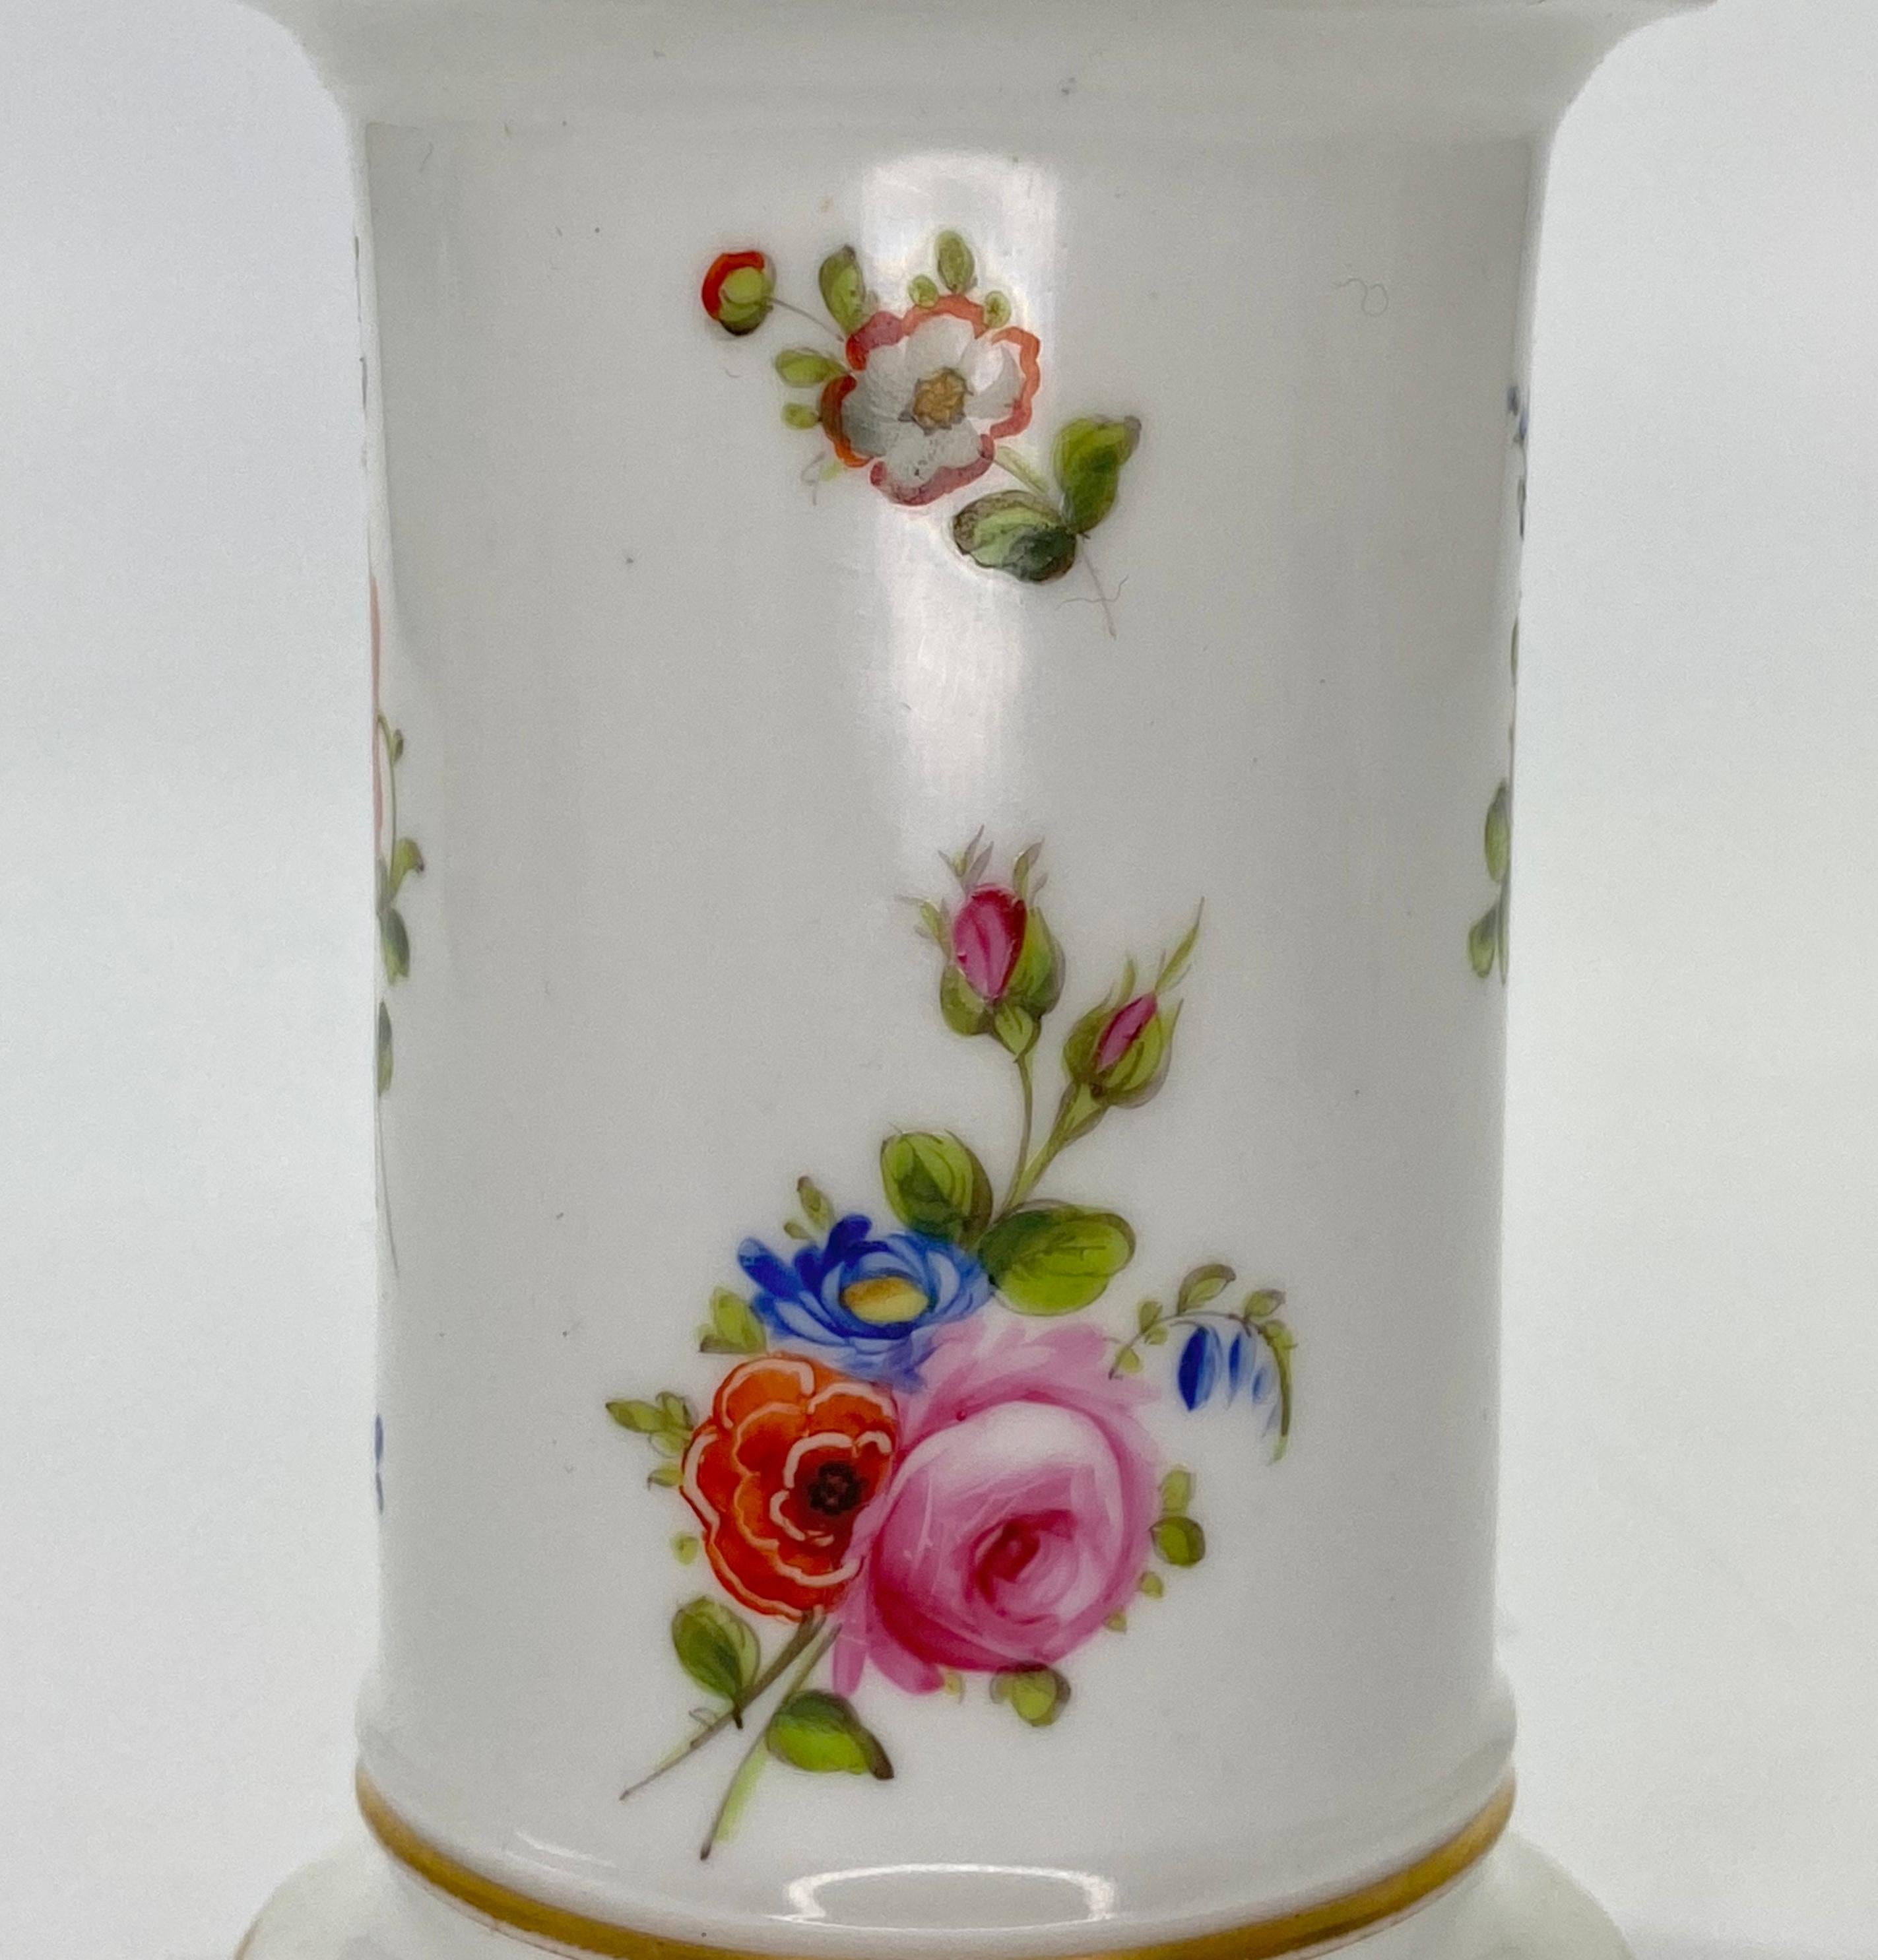 Fired Swansea Porcelain Spill Vase, Flowers, circa 1815